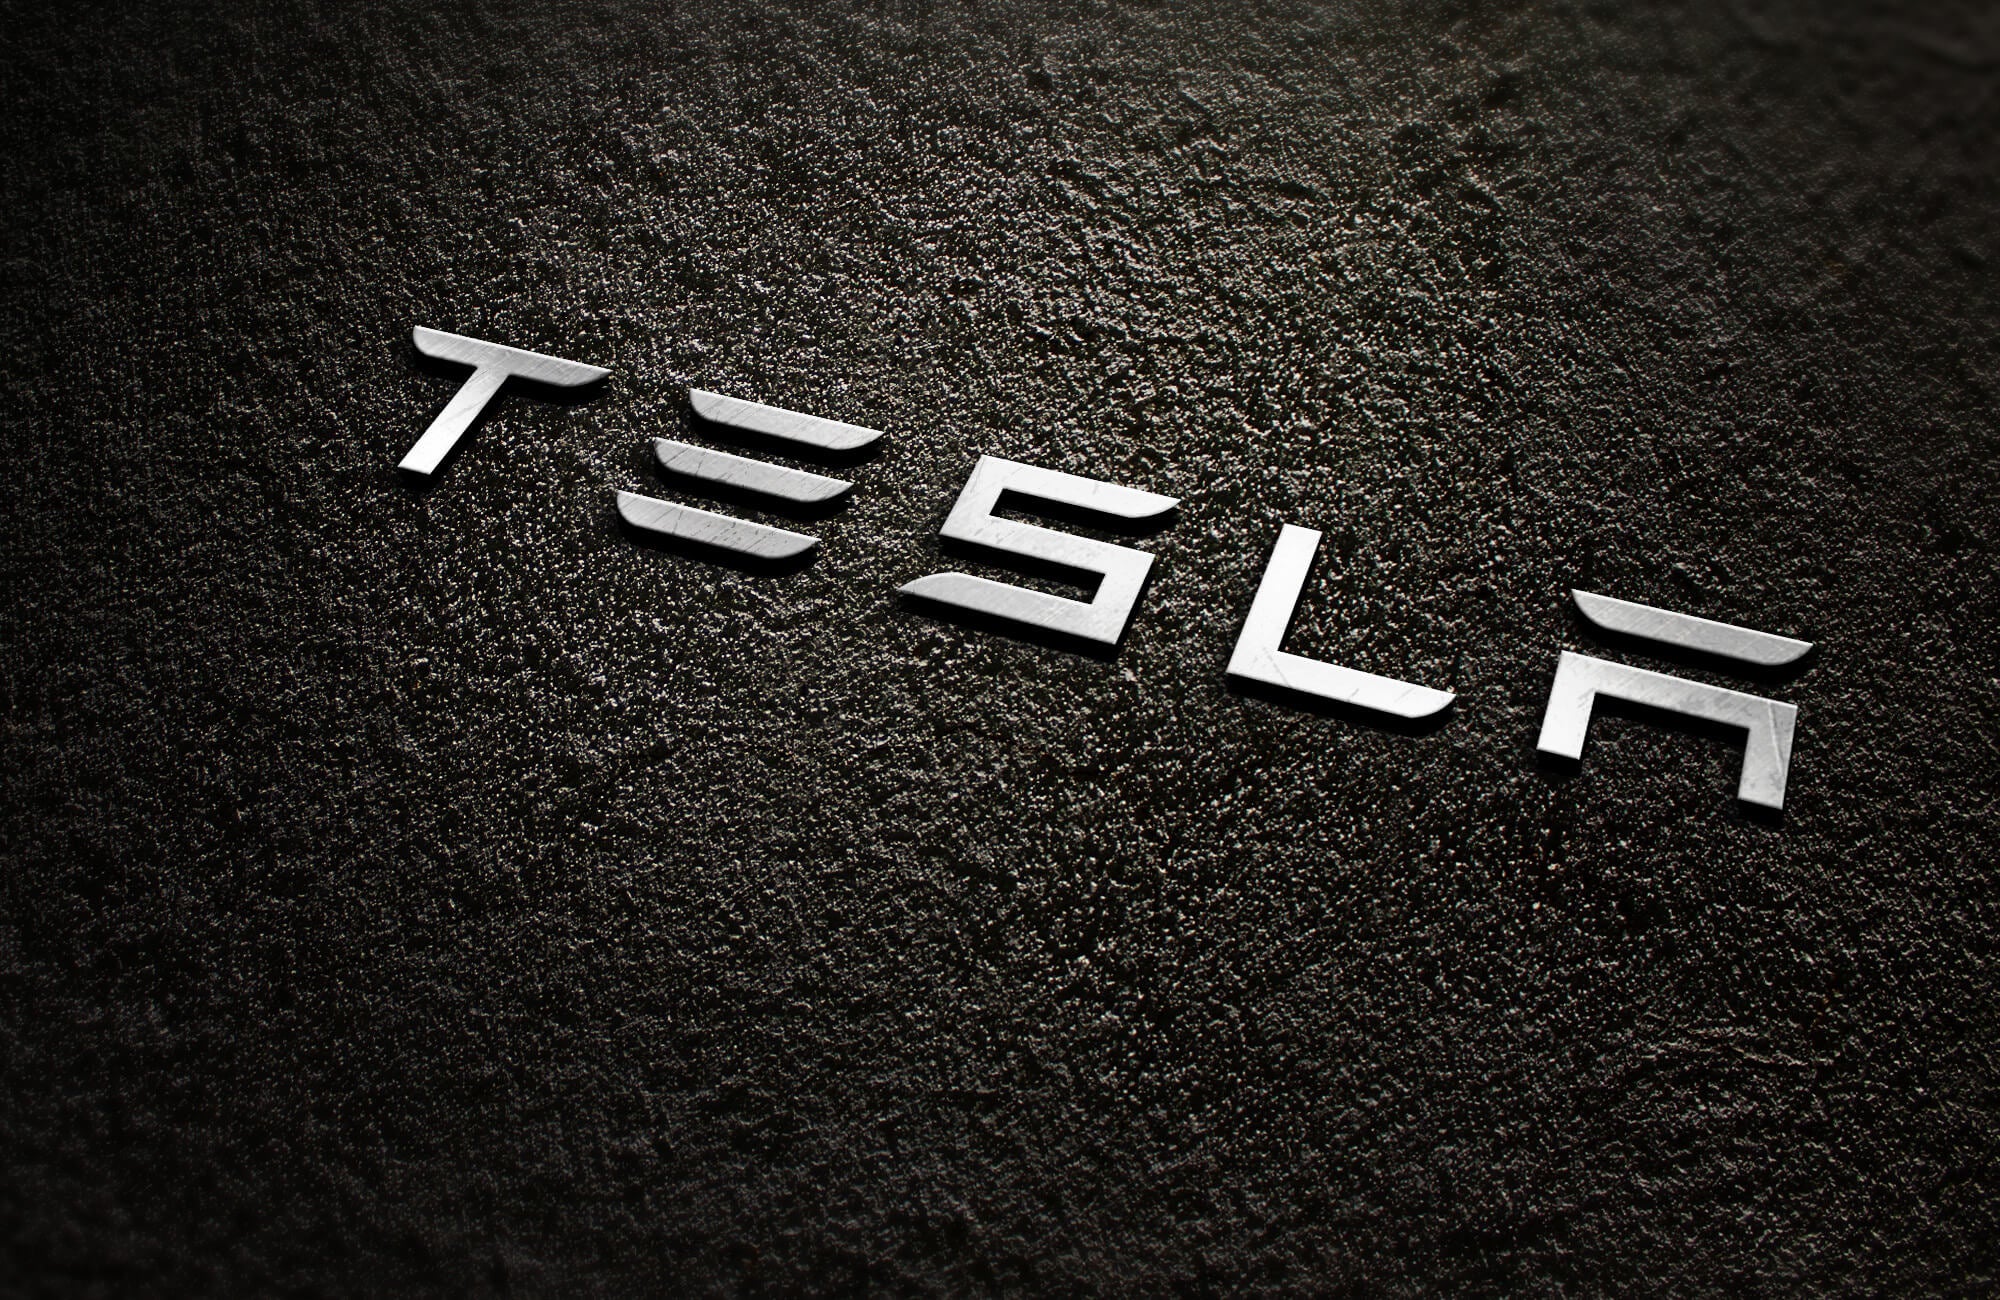 Tesla (TSLA) Emission Credit Revenue Gets New Boost by Major Customer: Honda